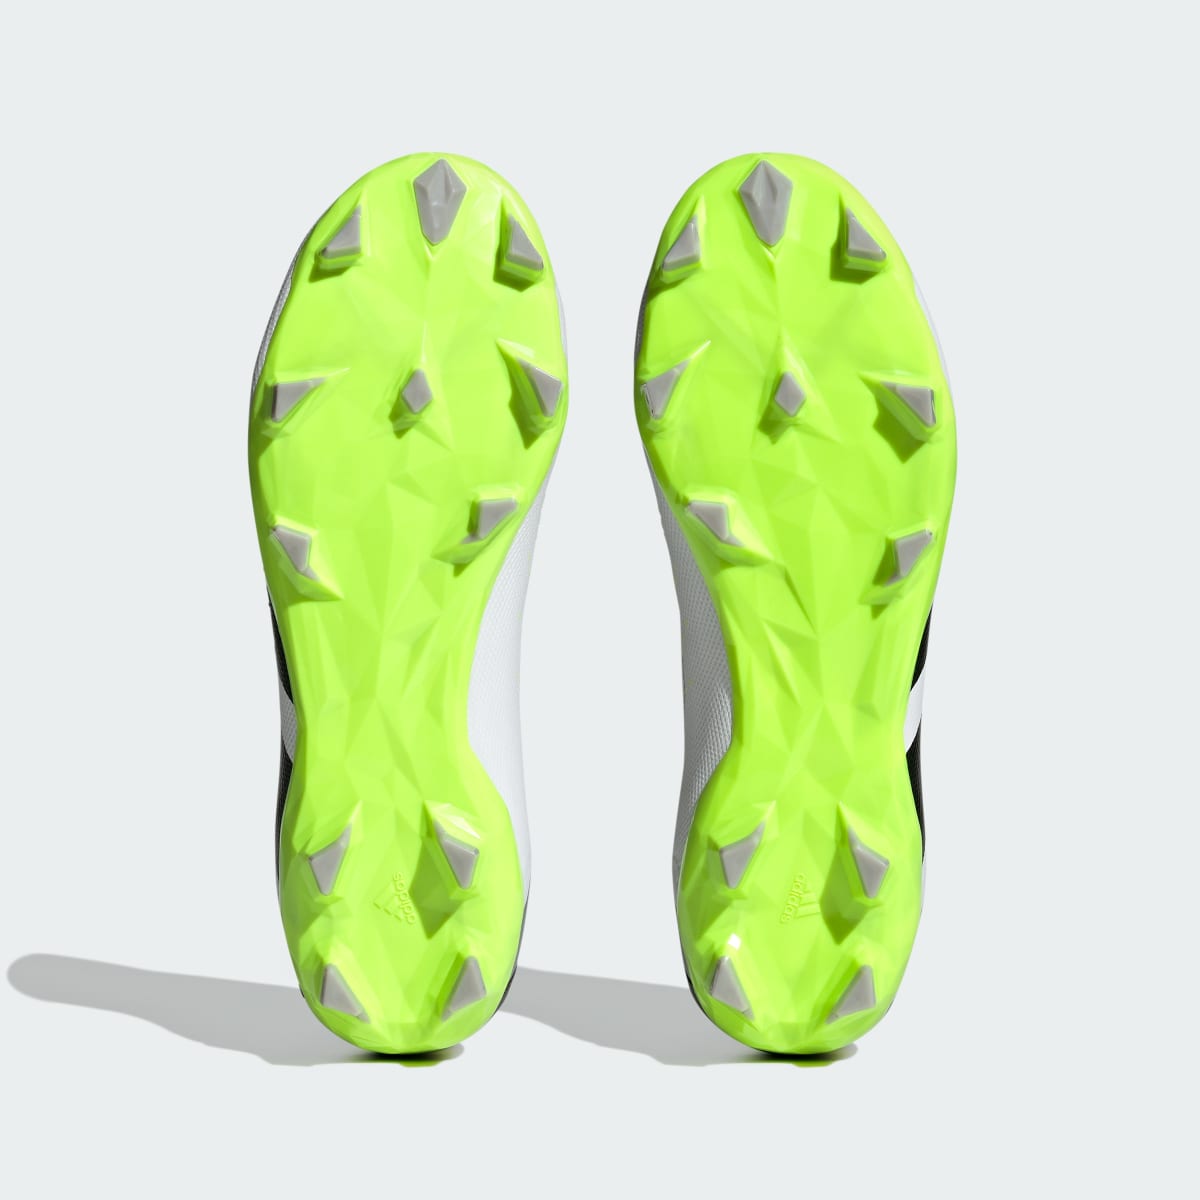 Adidas Calzado de Fútbol Predator Accuracy.3 Terreno Firme. 4